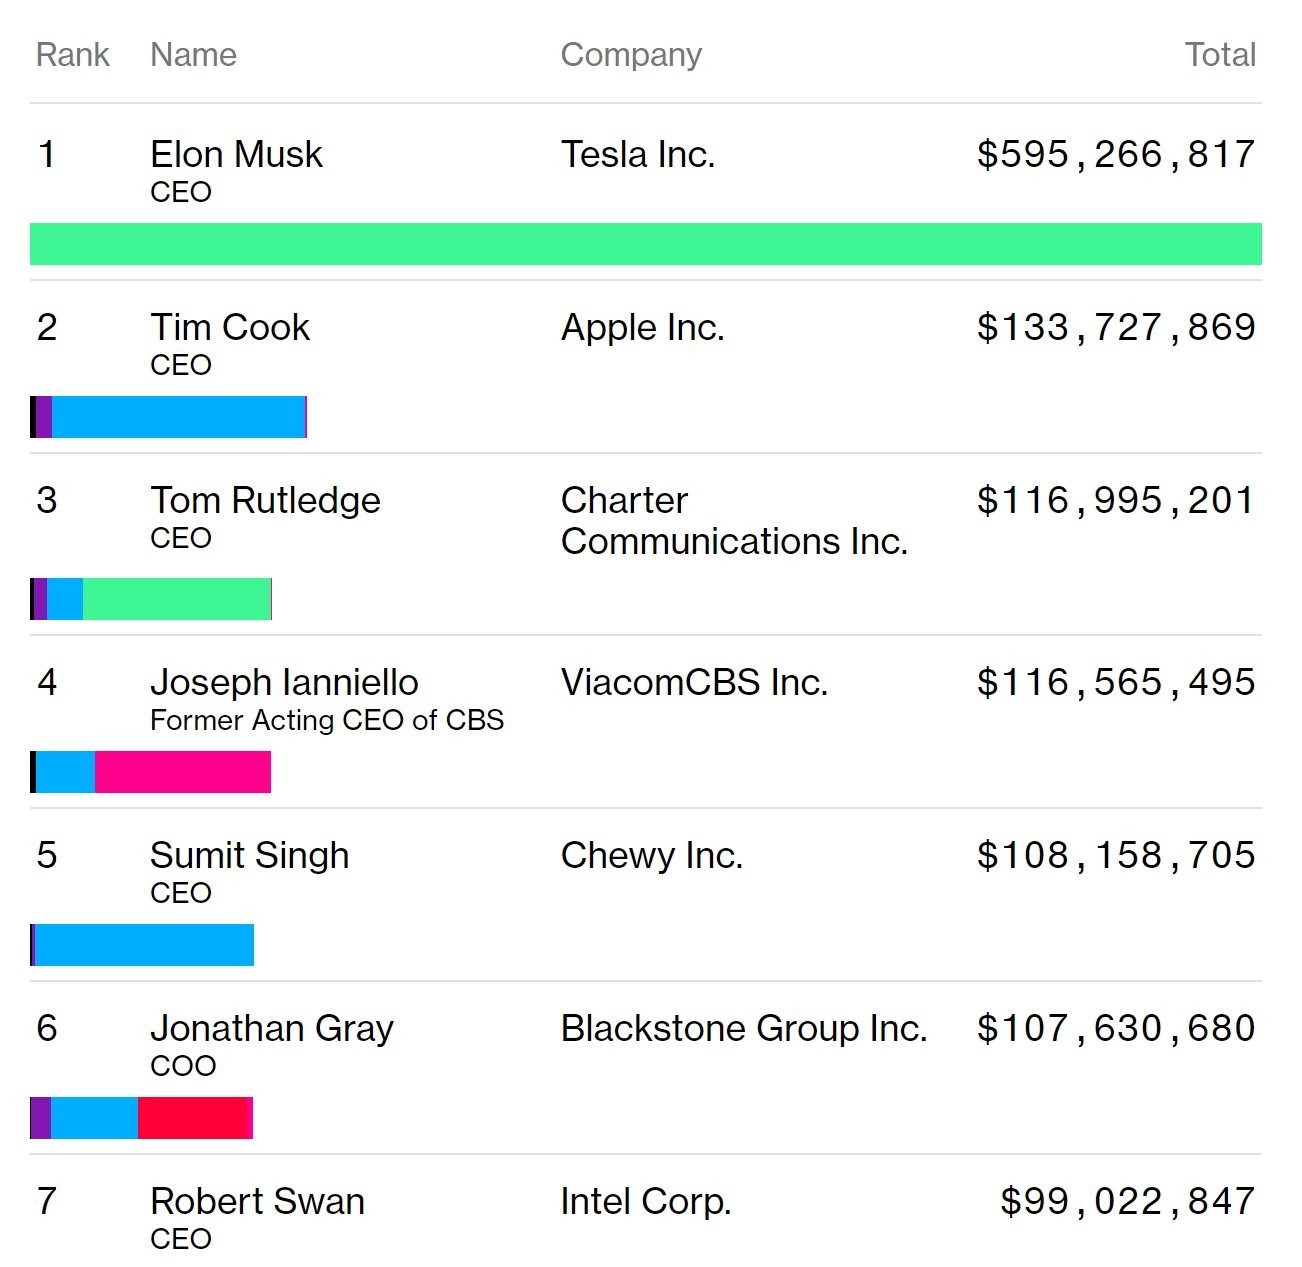 Teknoloji şirketlerinin CEO'ları arasında en çok kazanan Tim Cook